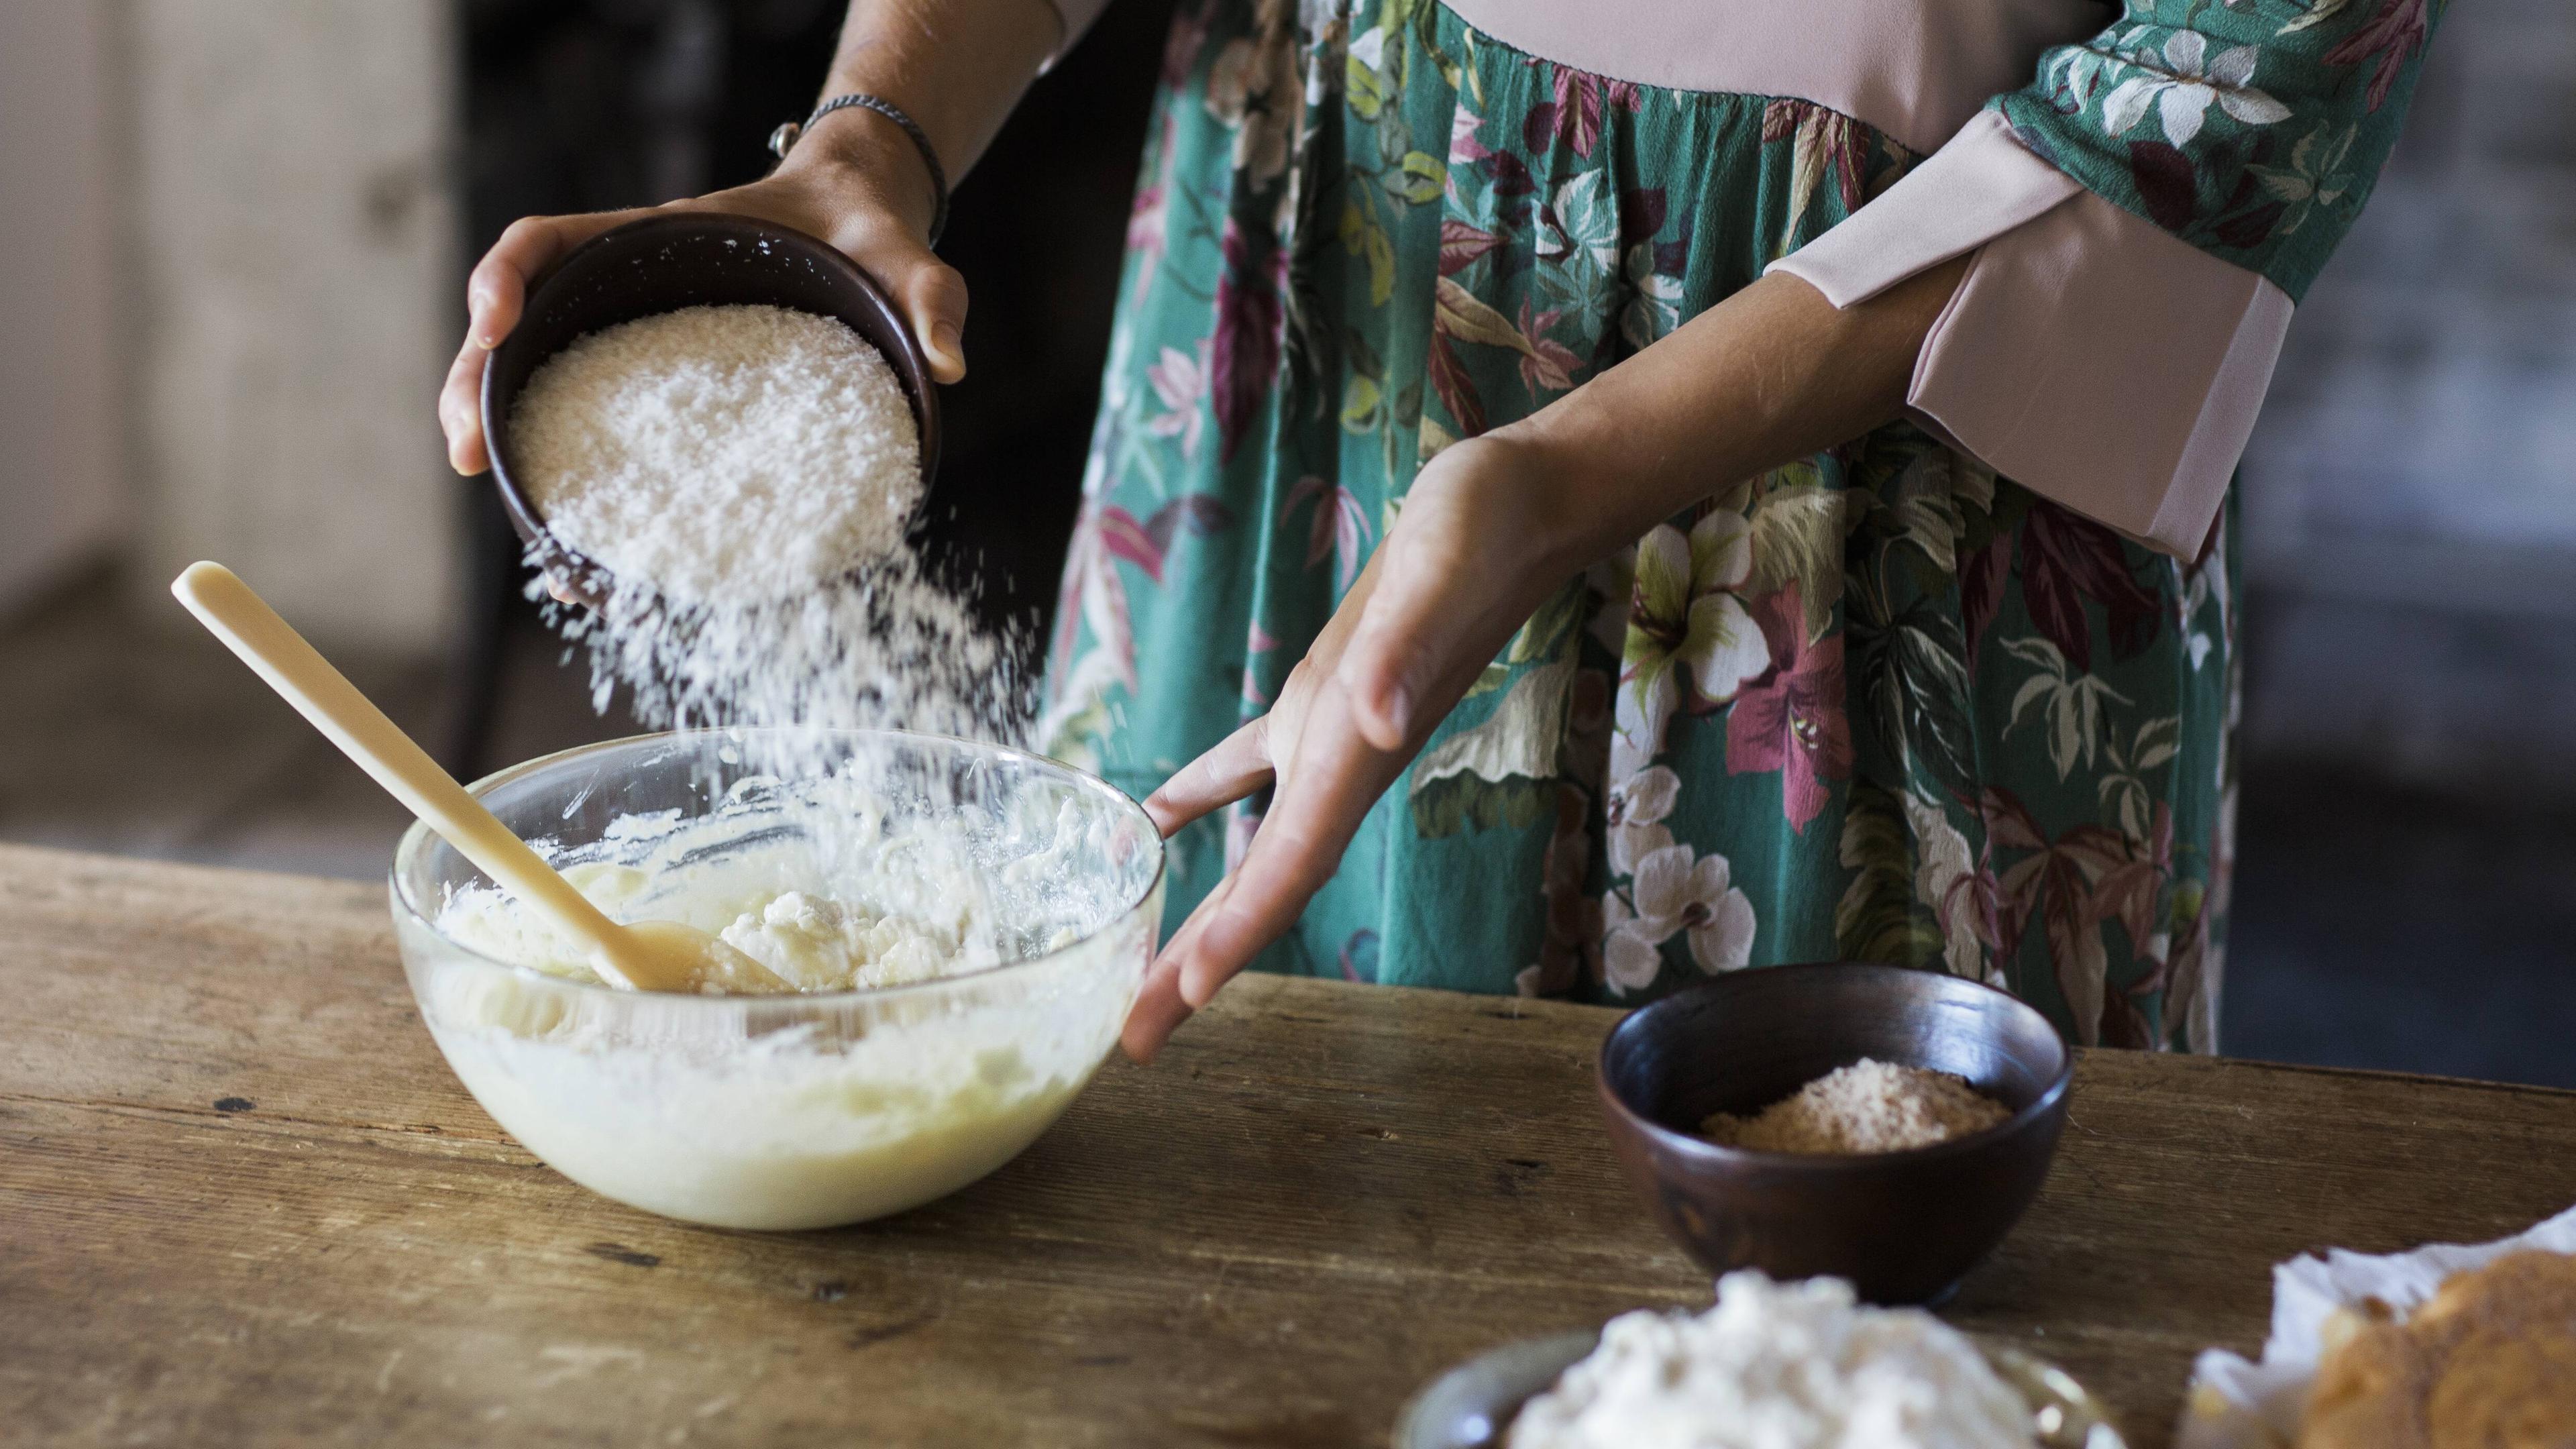 Eine Frau bereitet einen Kuchenteig zu, indem sie Mehl in eine Schüssel gibt.